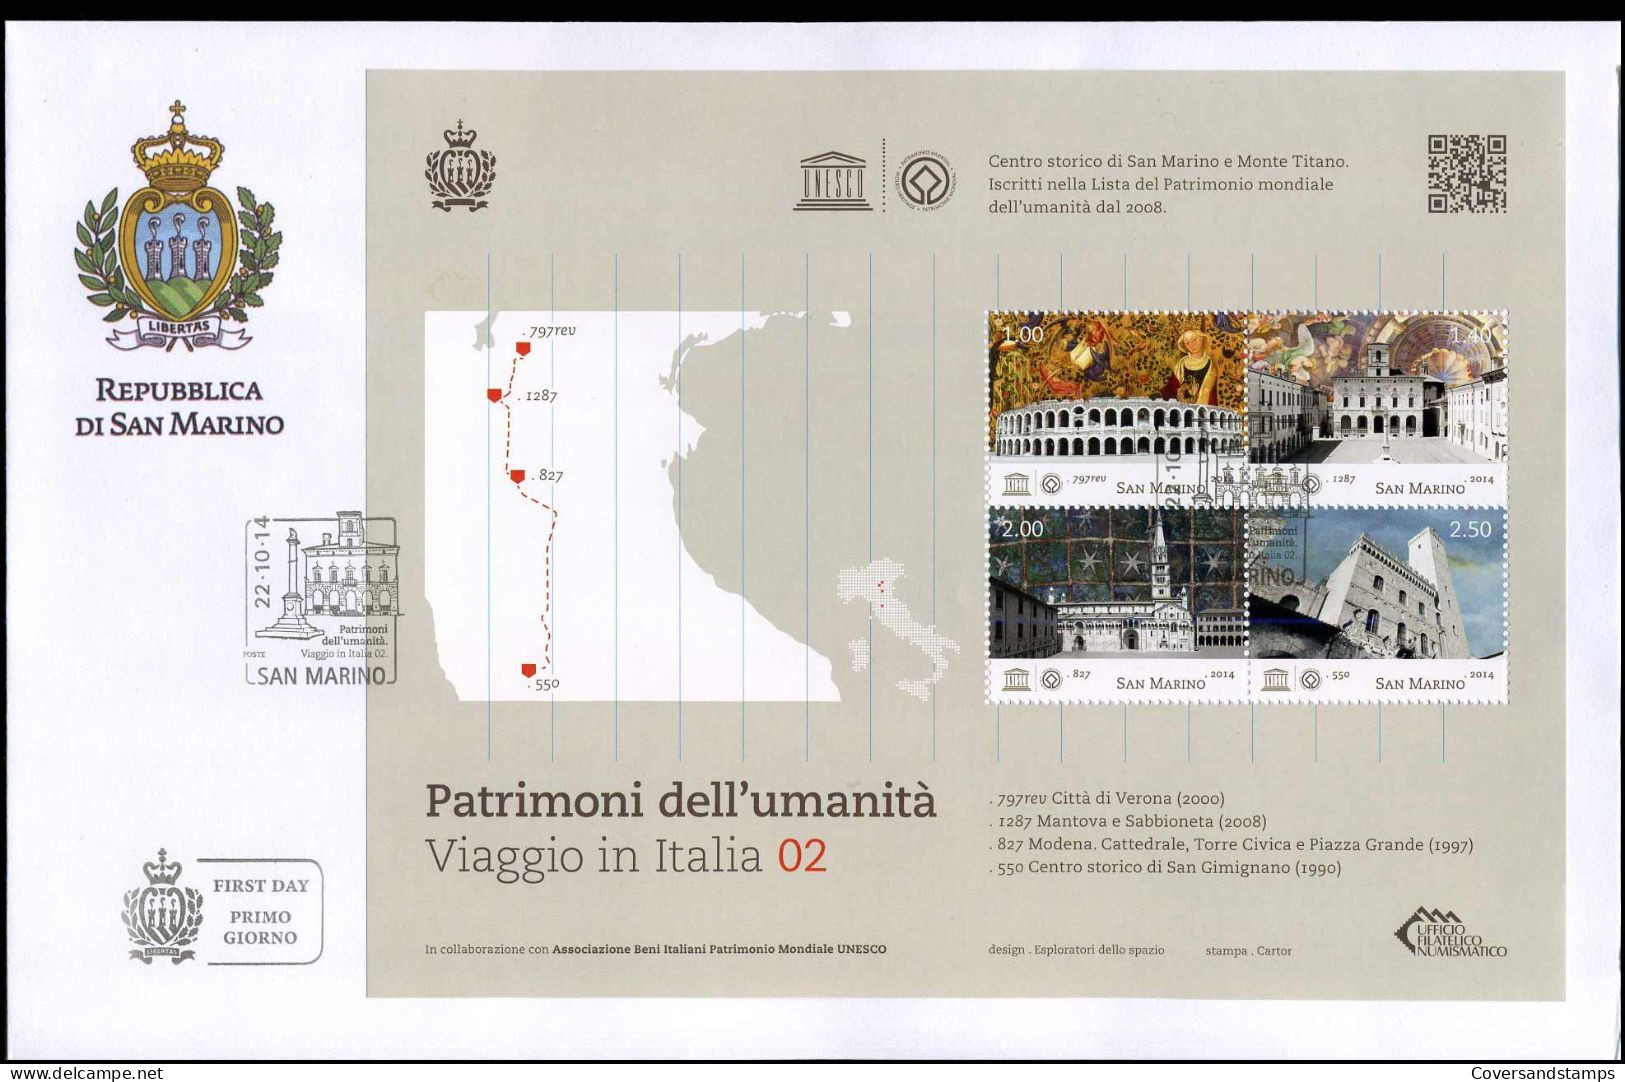 San Marino - FDC 2014 - Patrimoni Dell'umanita, Viaggio In Italia 02 - FDC